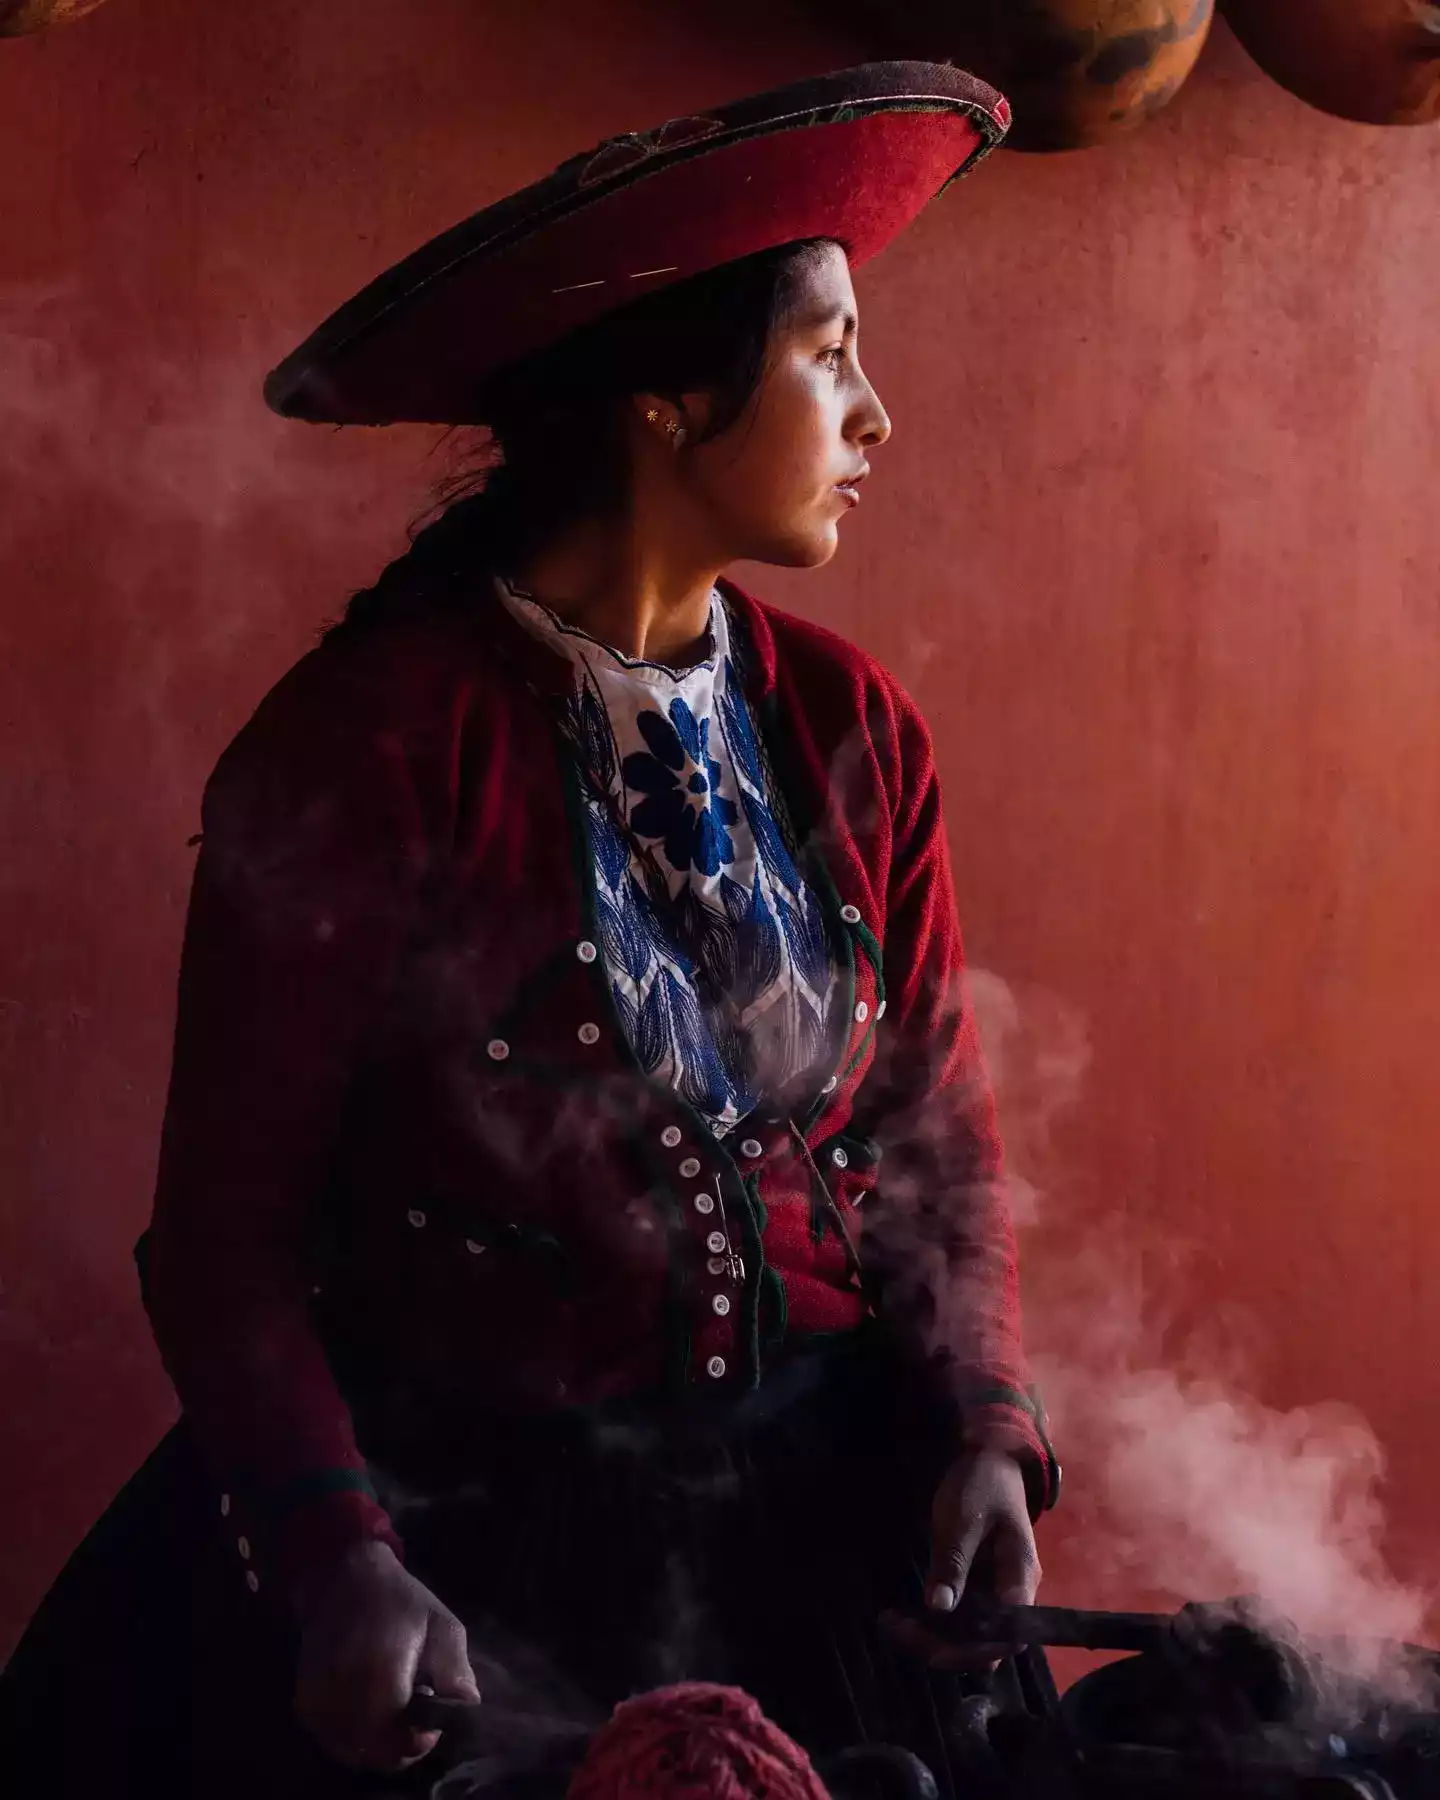 Chincheros lady in Cusco